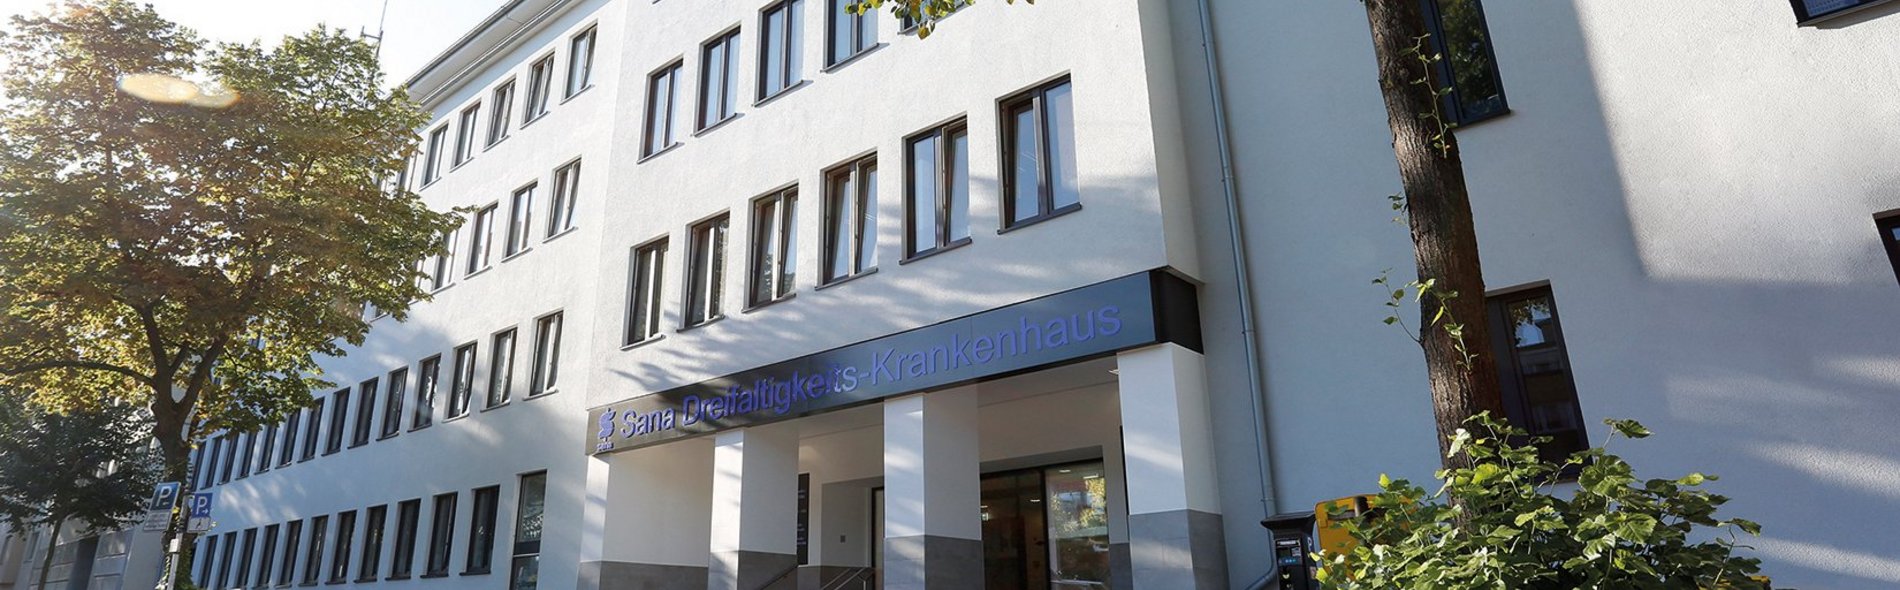 Sana Dreifaltigkeits-Krankenhaus Köln Außenansicht